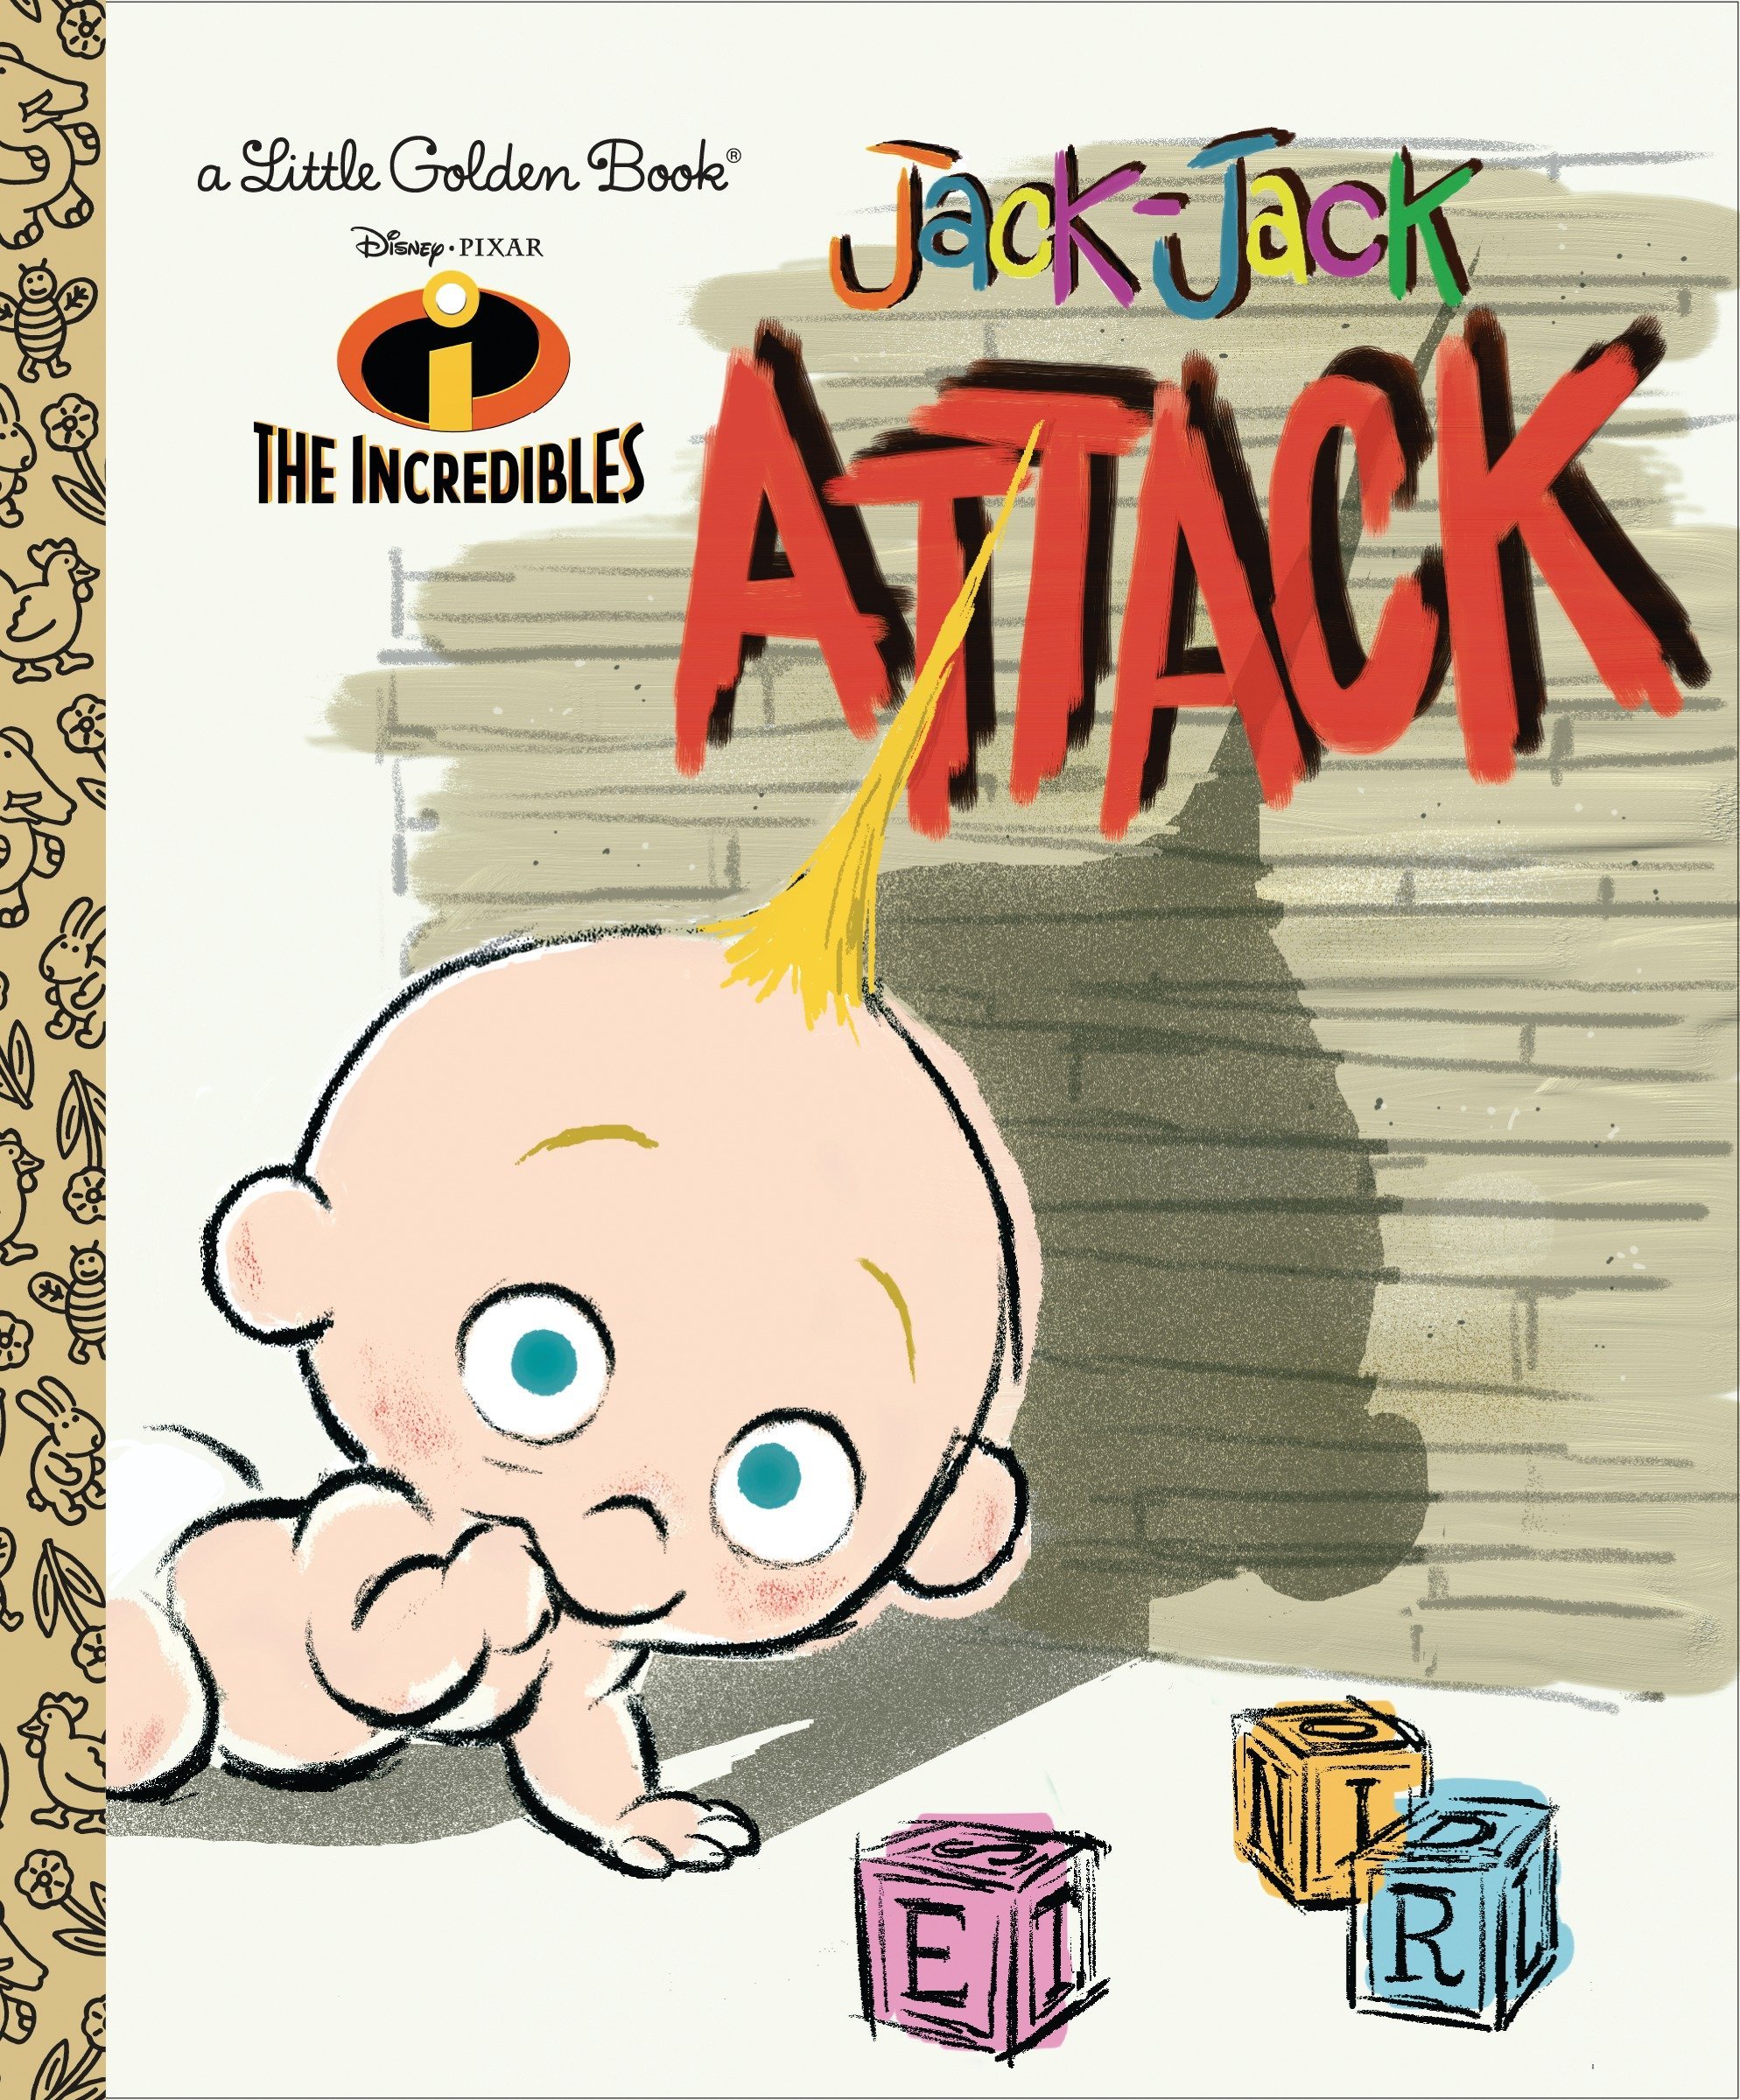 Incredibles Jack-Jack Attack Little Golden Book